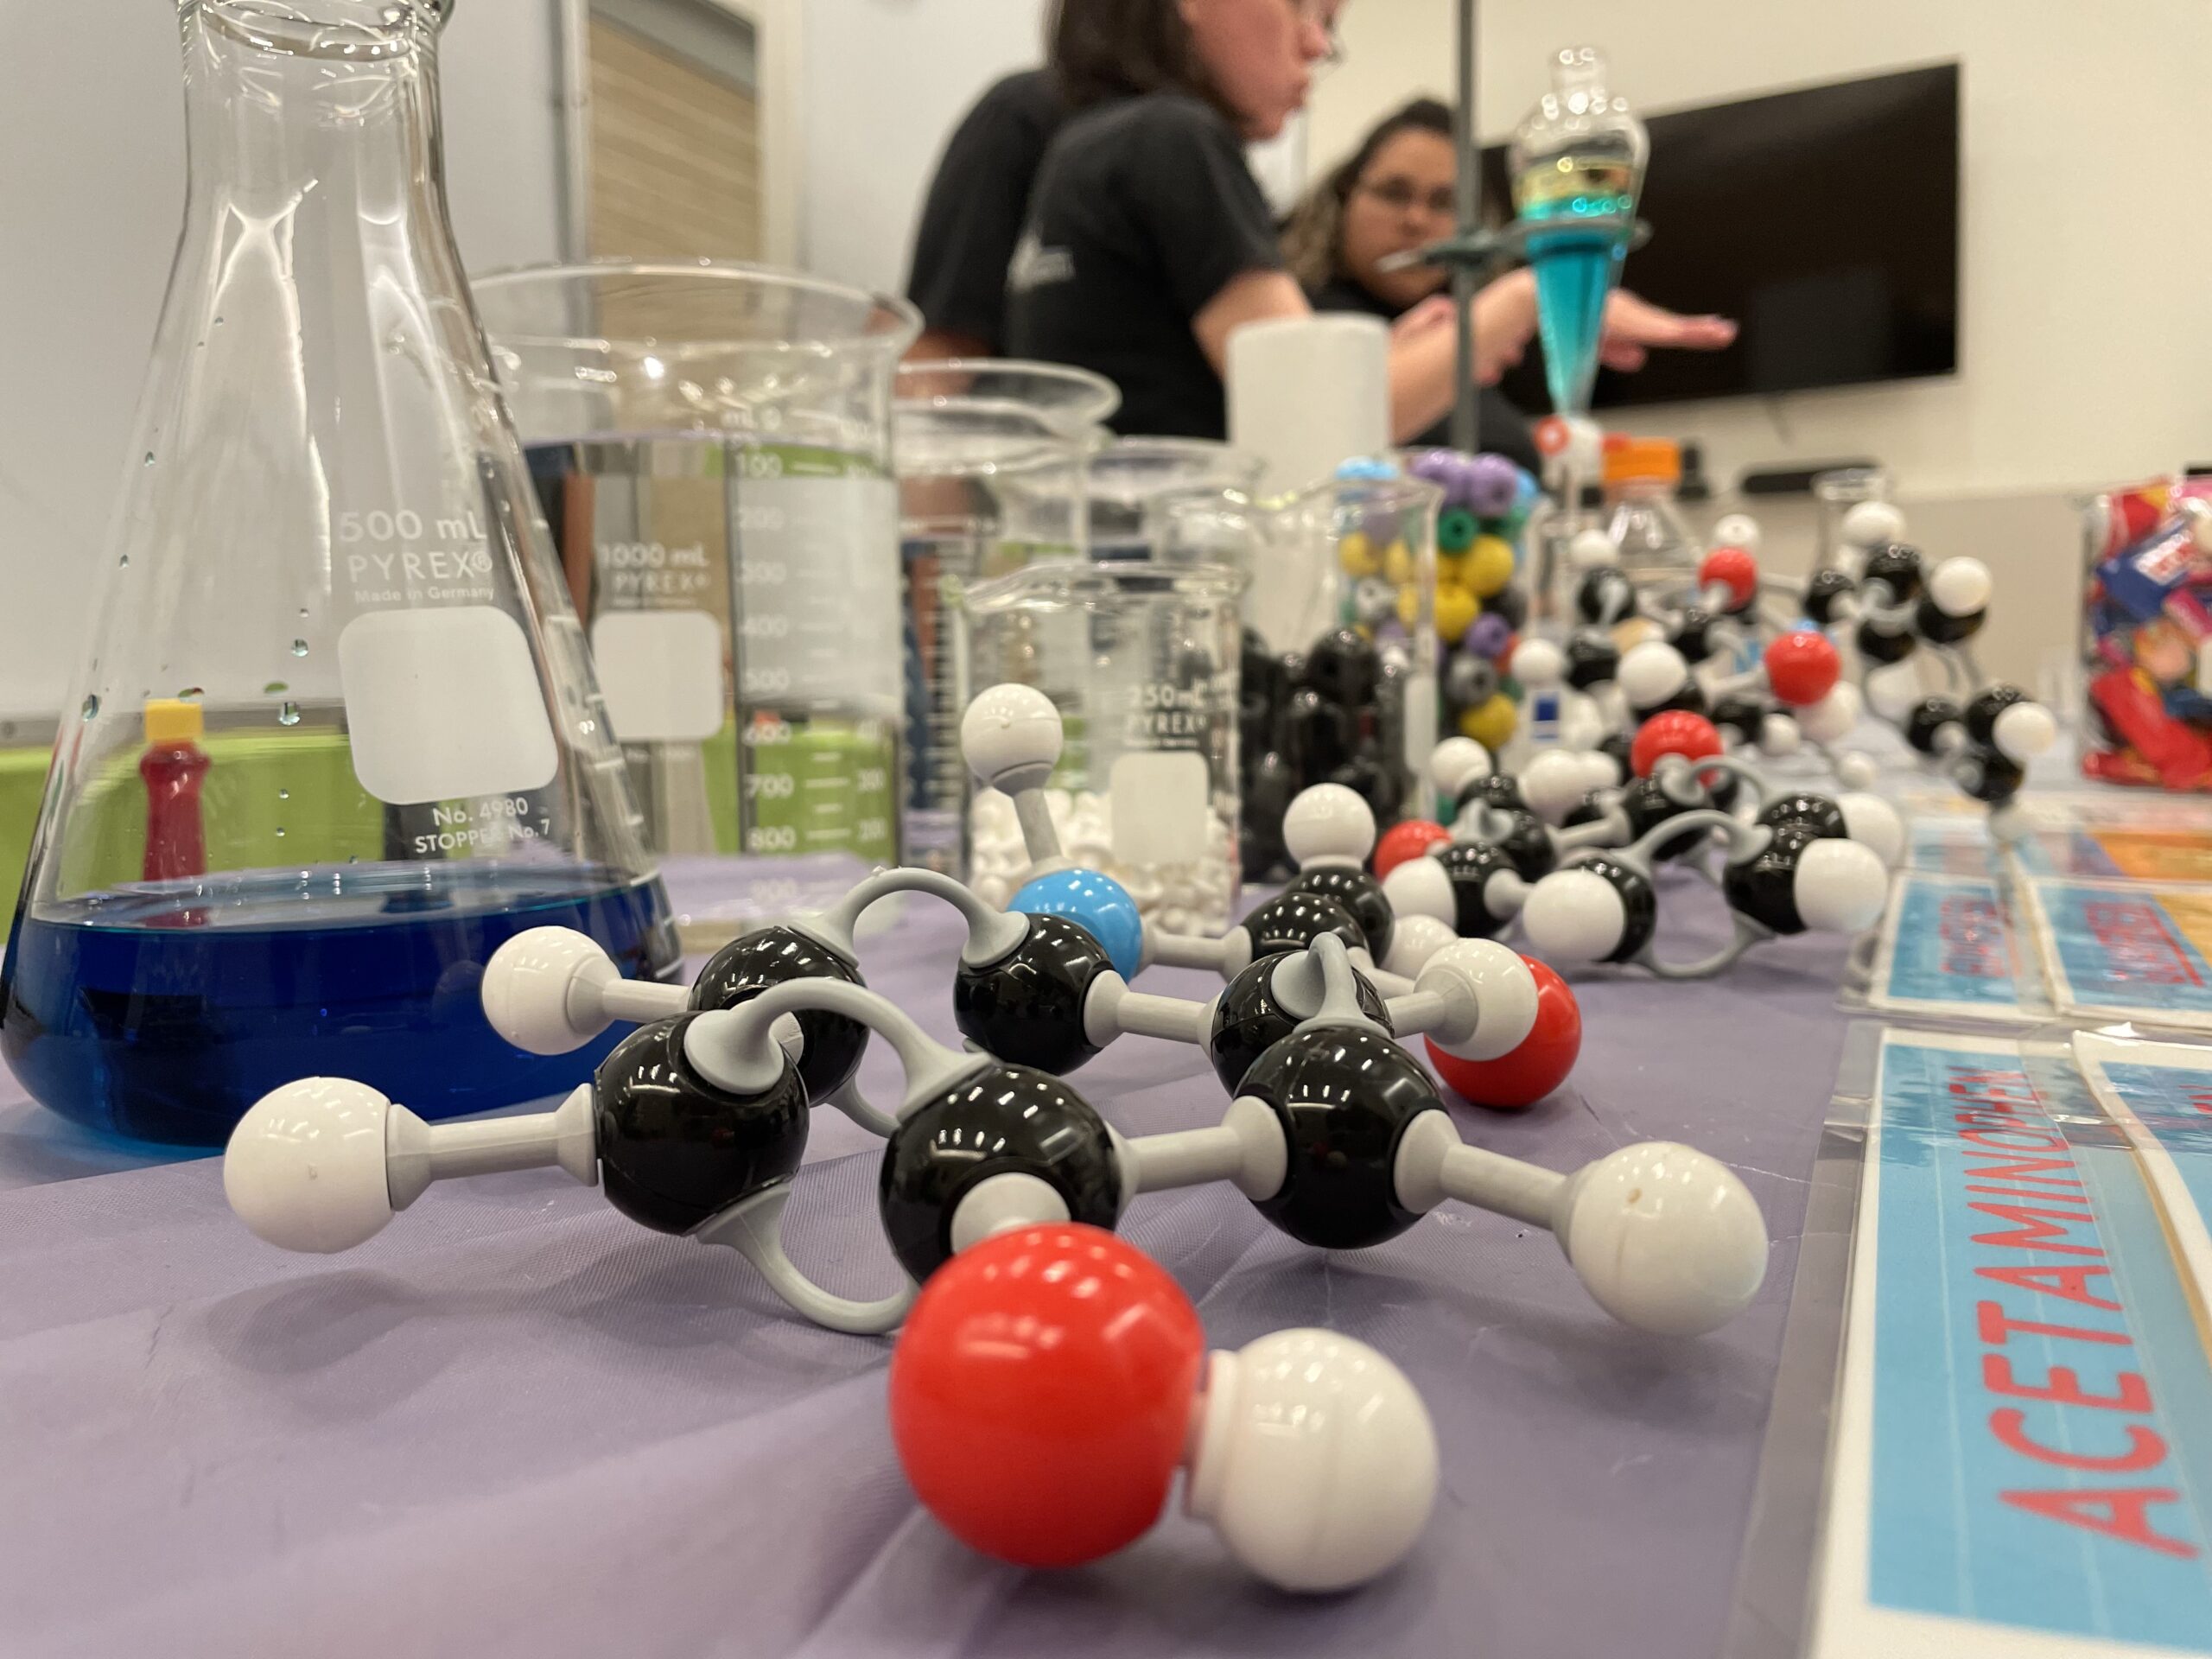 Mesa donde han puesto sustancias químicas en vasos y matraz de cristal. Al frente de las sustancias unos modelos de moléculas orgánicas.